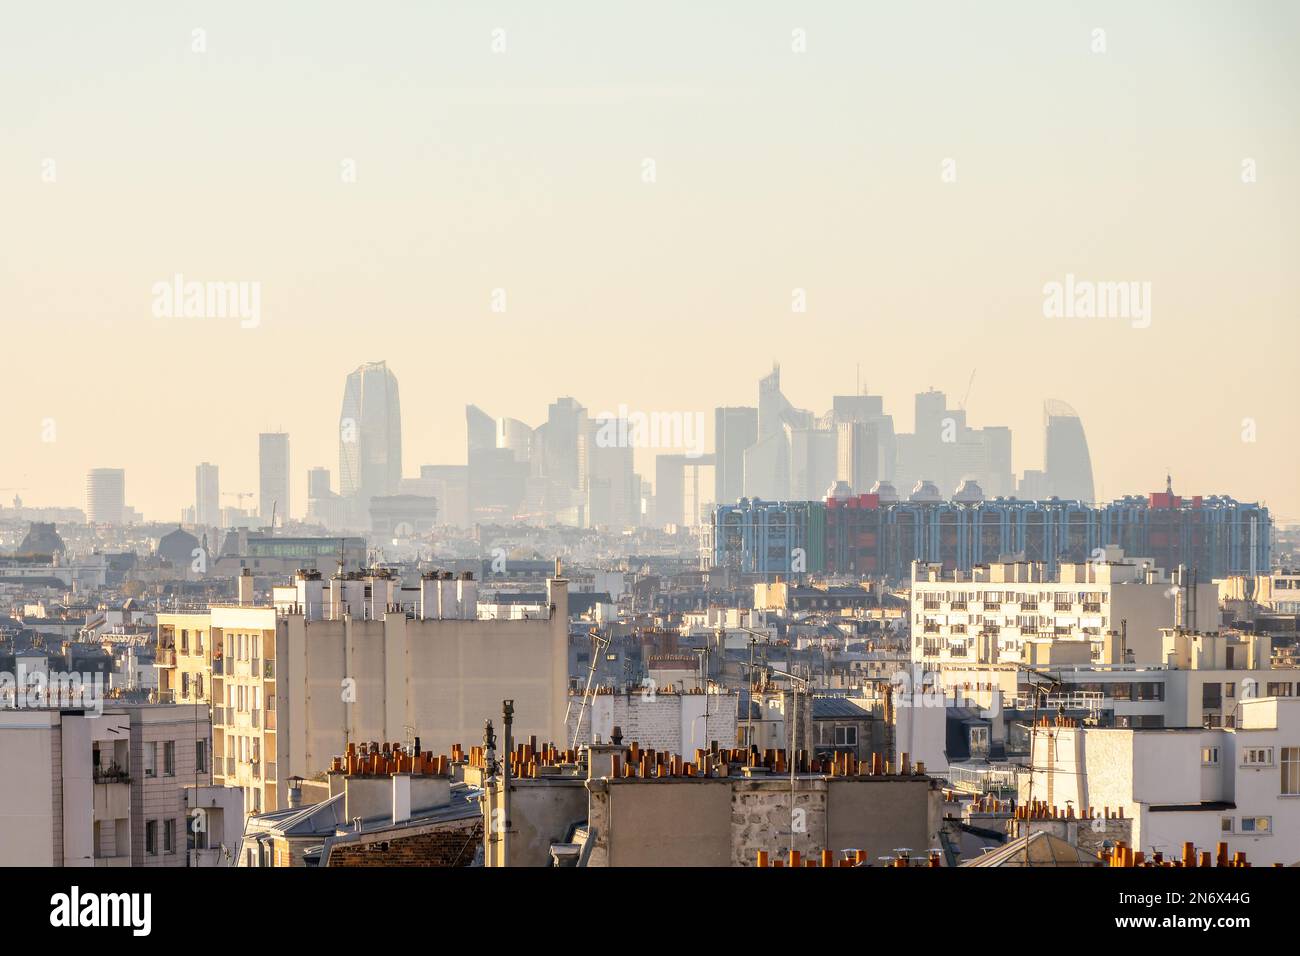 Vista aerea di Parigi, Francia, skyline del quartiere degli affari la Défense con edifici moderni e torri sullo sfondo Foto Stock